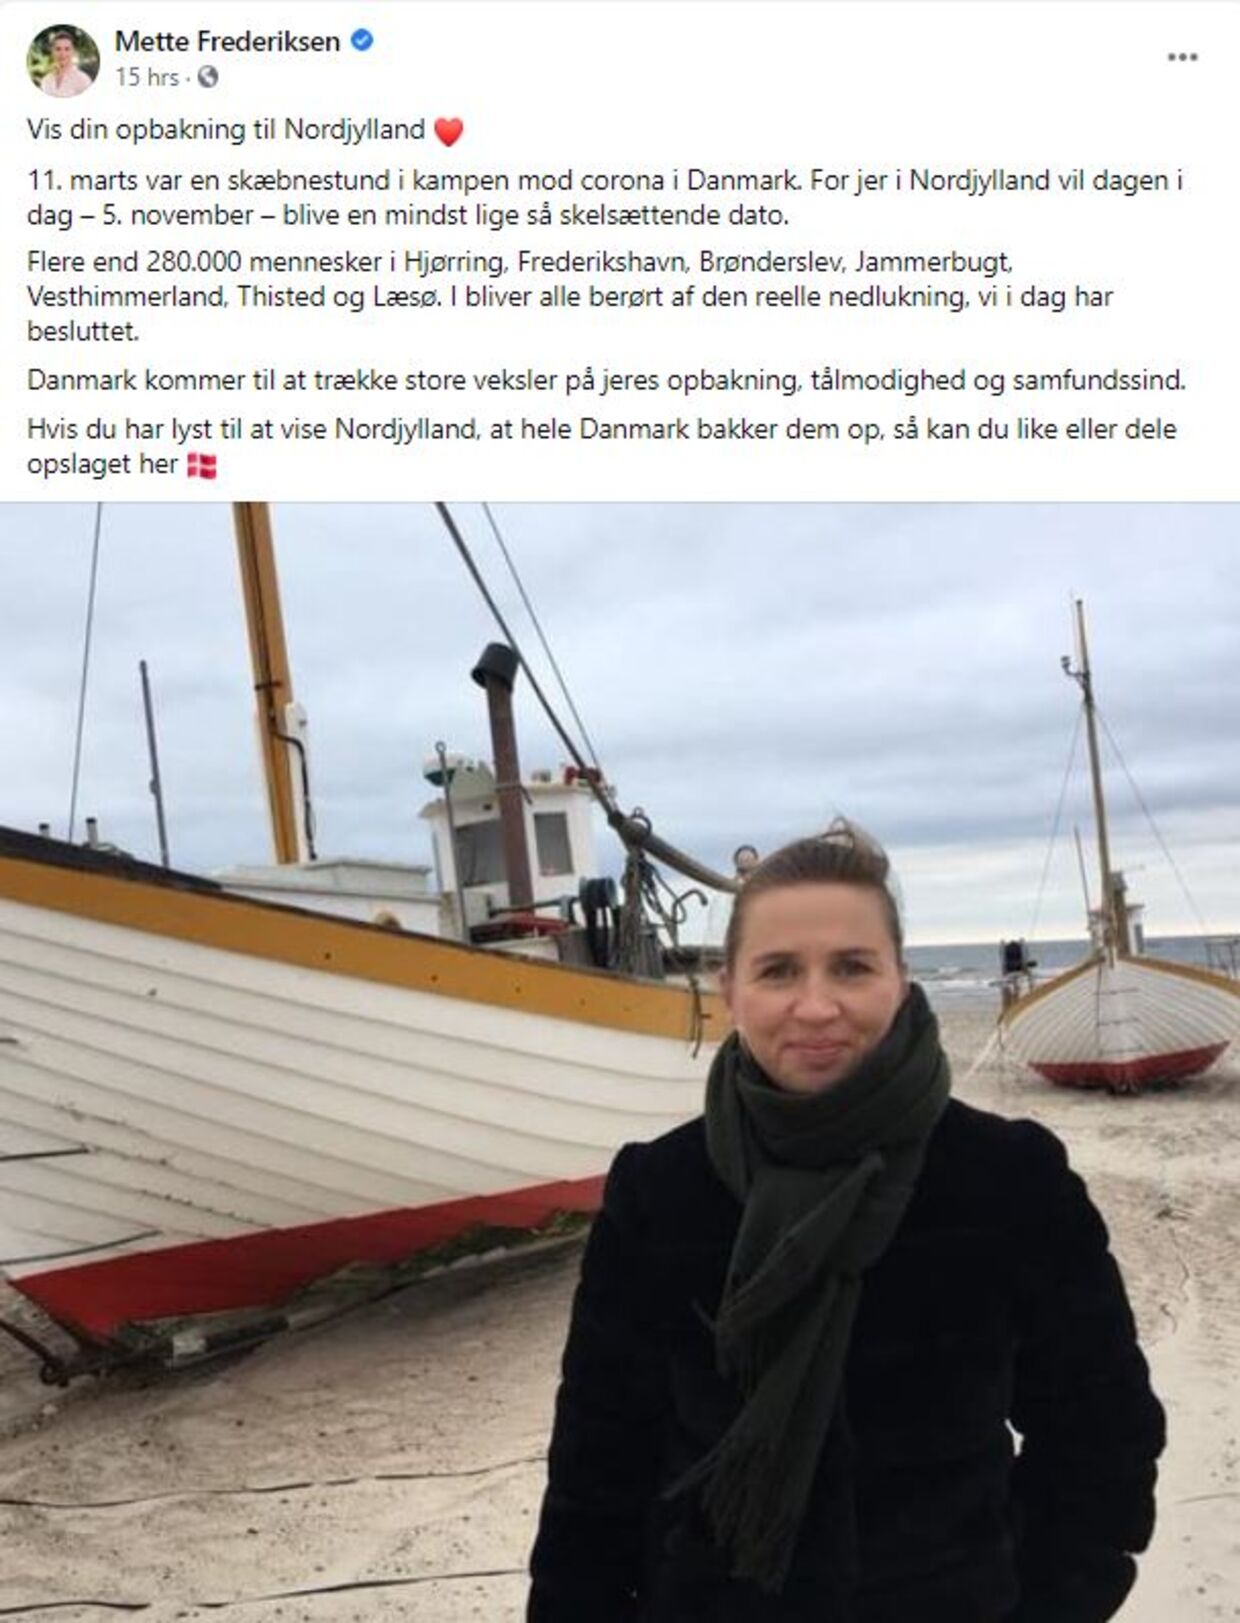 Mette Frederiksens Facebook-opslag har ramt hende som en boomerang, da hun kritiseres kraftigt for at »like-hunte« i sit opslag og bruge nordjydernes ulykke for at vinde politiske point.